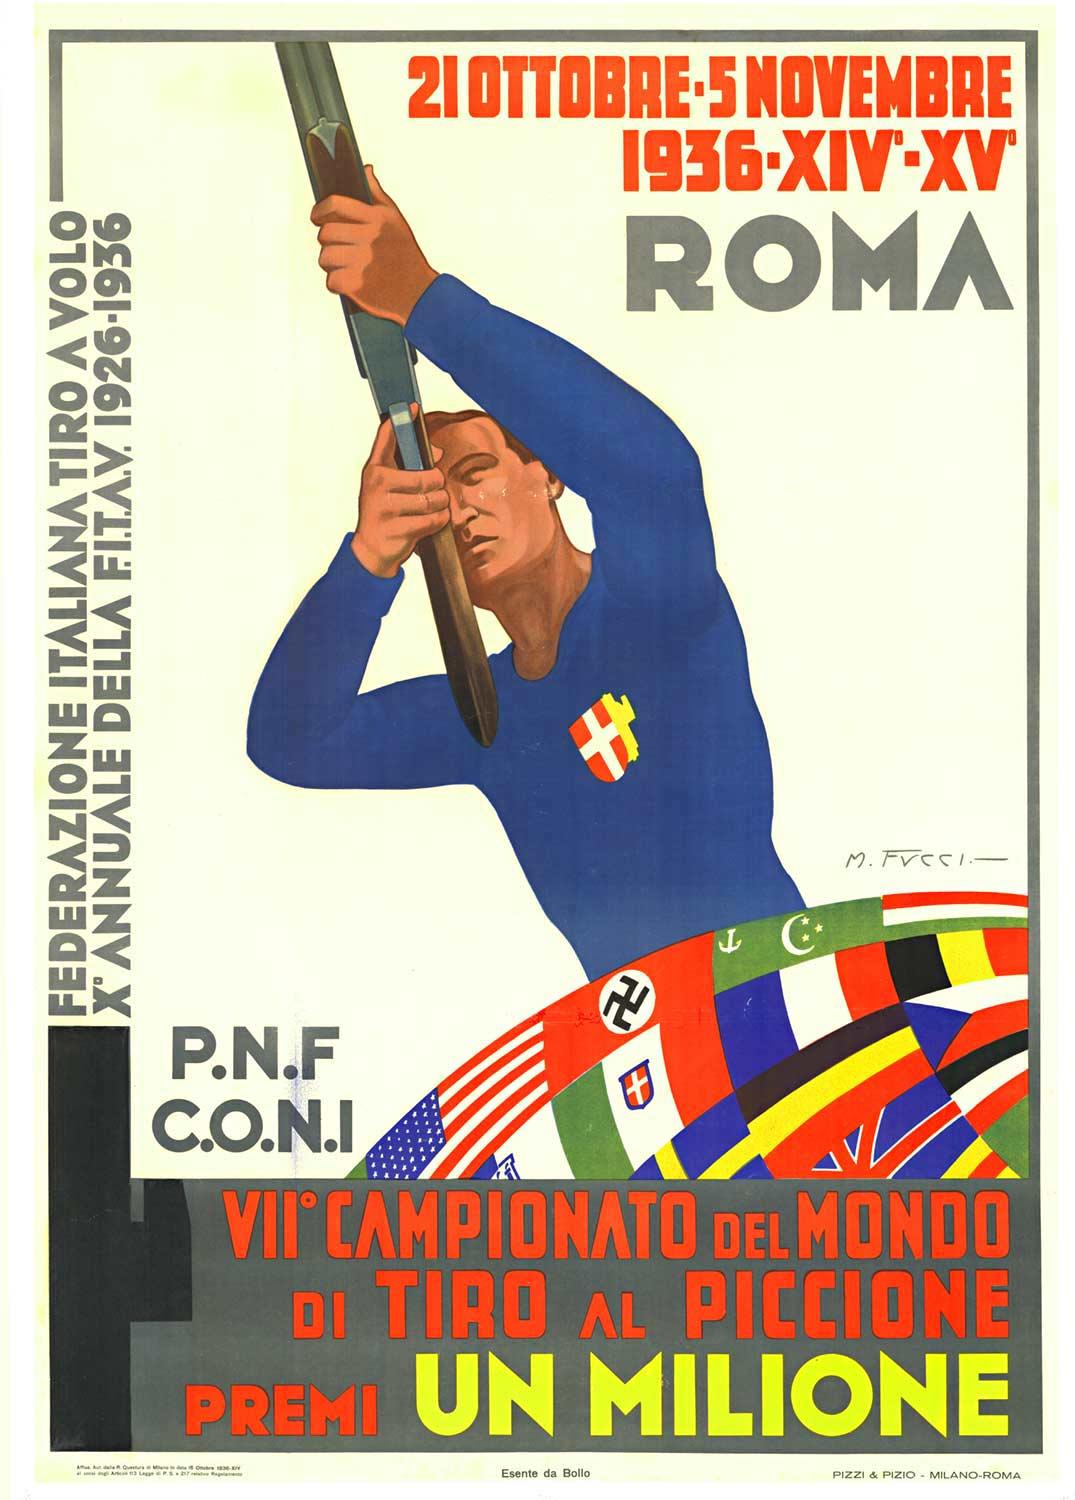 M. Fucci Portrait Print – Originales Vintage-Sportplakat „Campionato del Mondo, Tiro al Piccione“